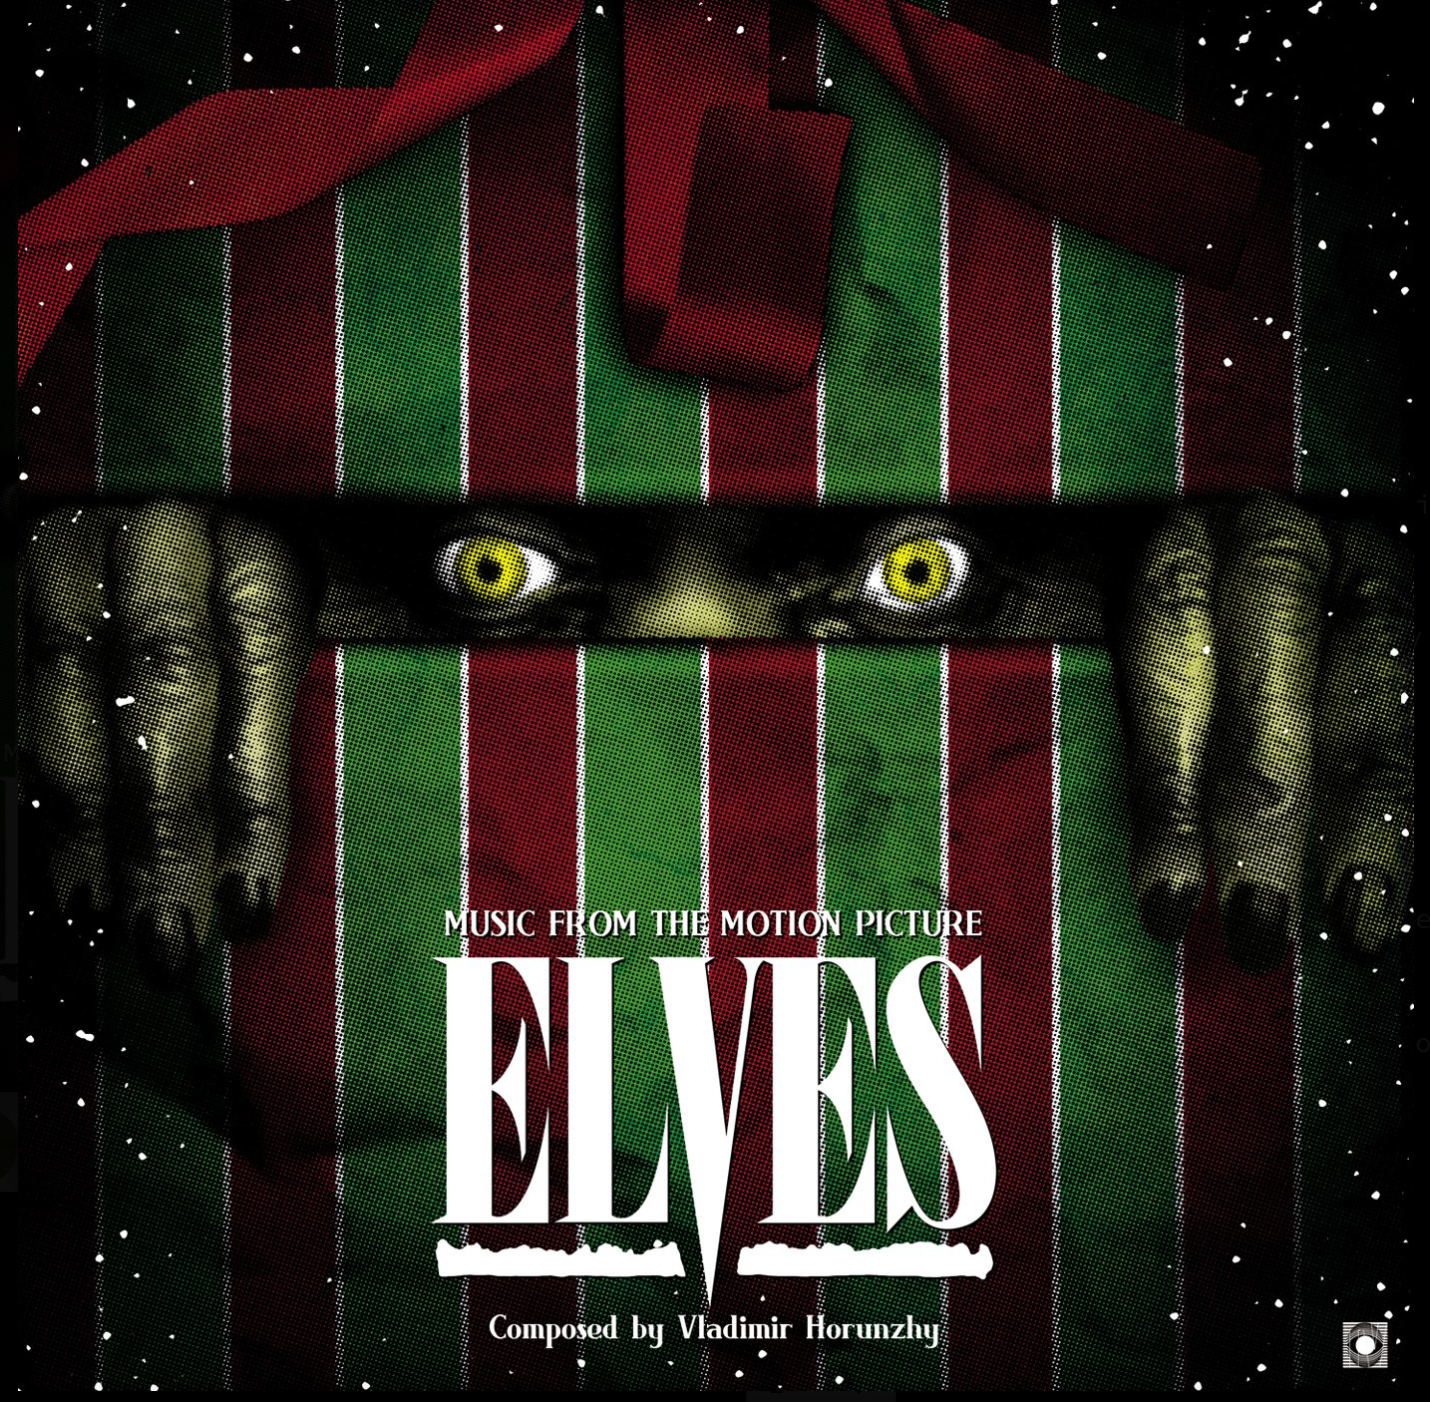 TV030: Elves OST lp